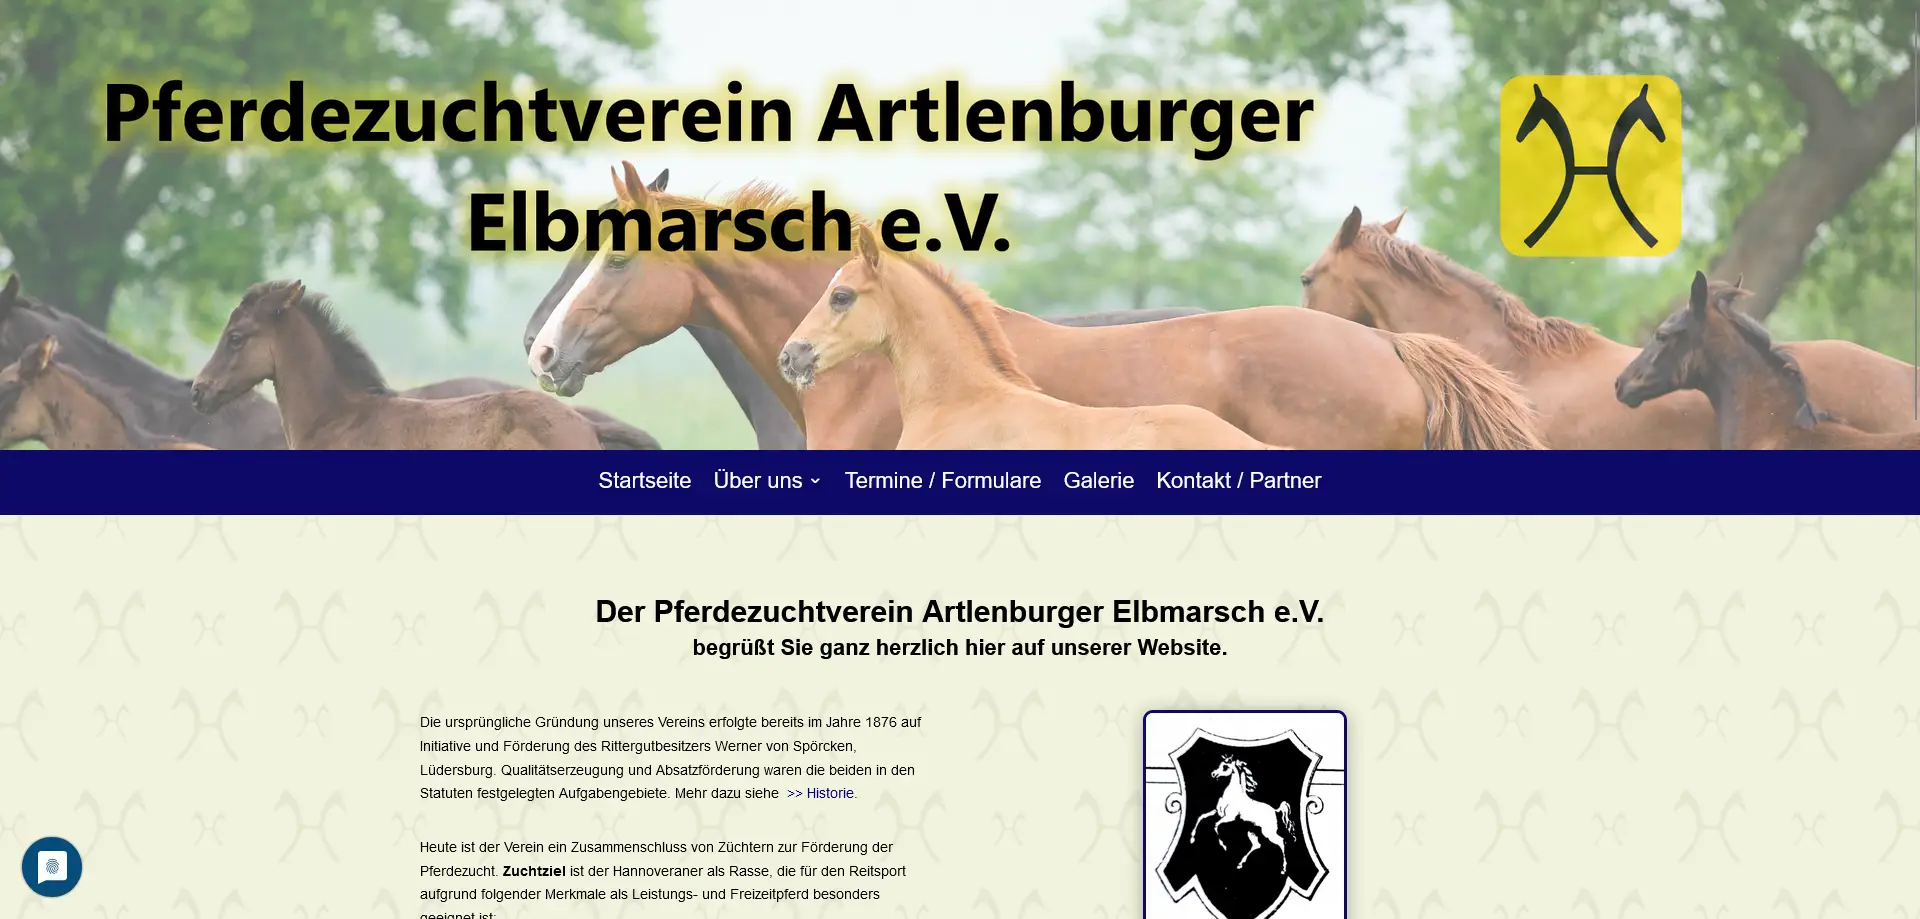 Website: Pferdezuchtverein Artlenburger Elbmarsch e.V.